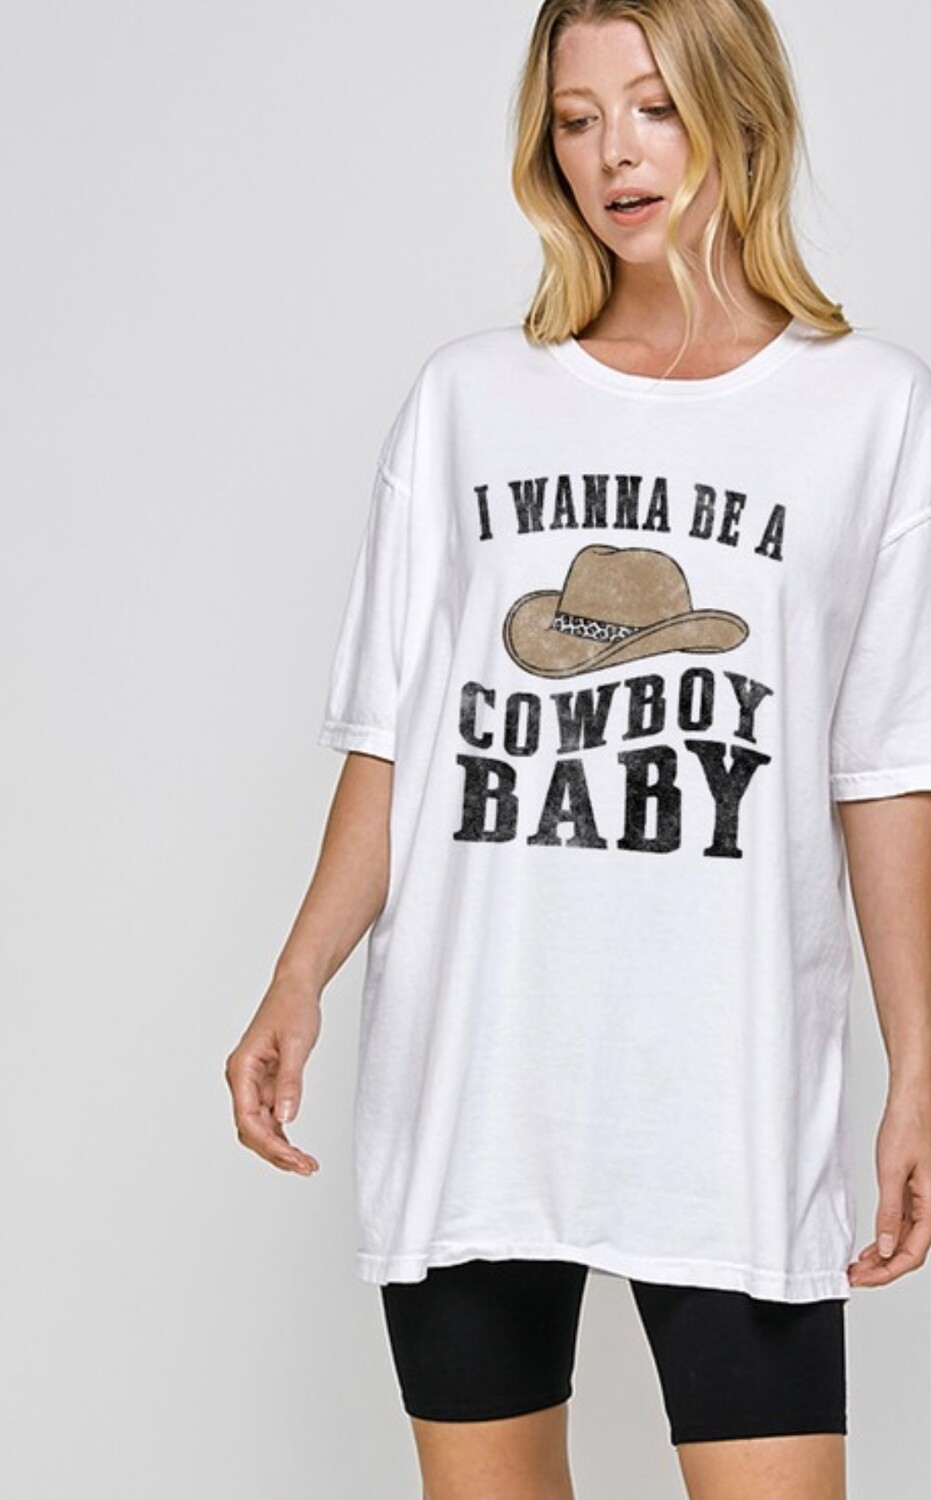 Cowboy Baby